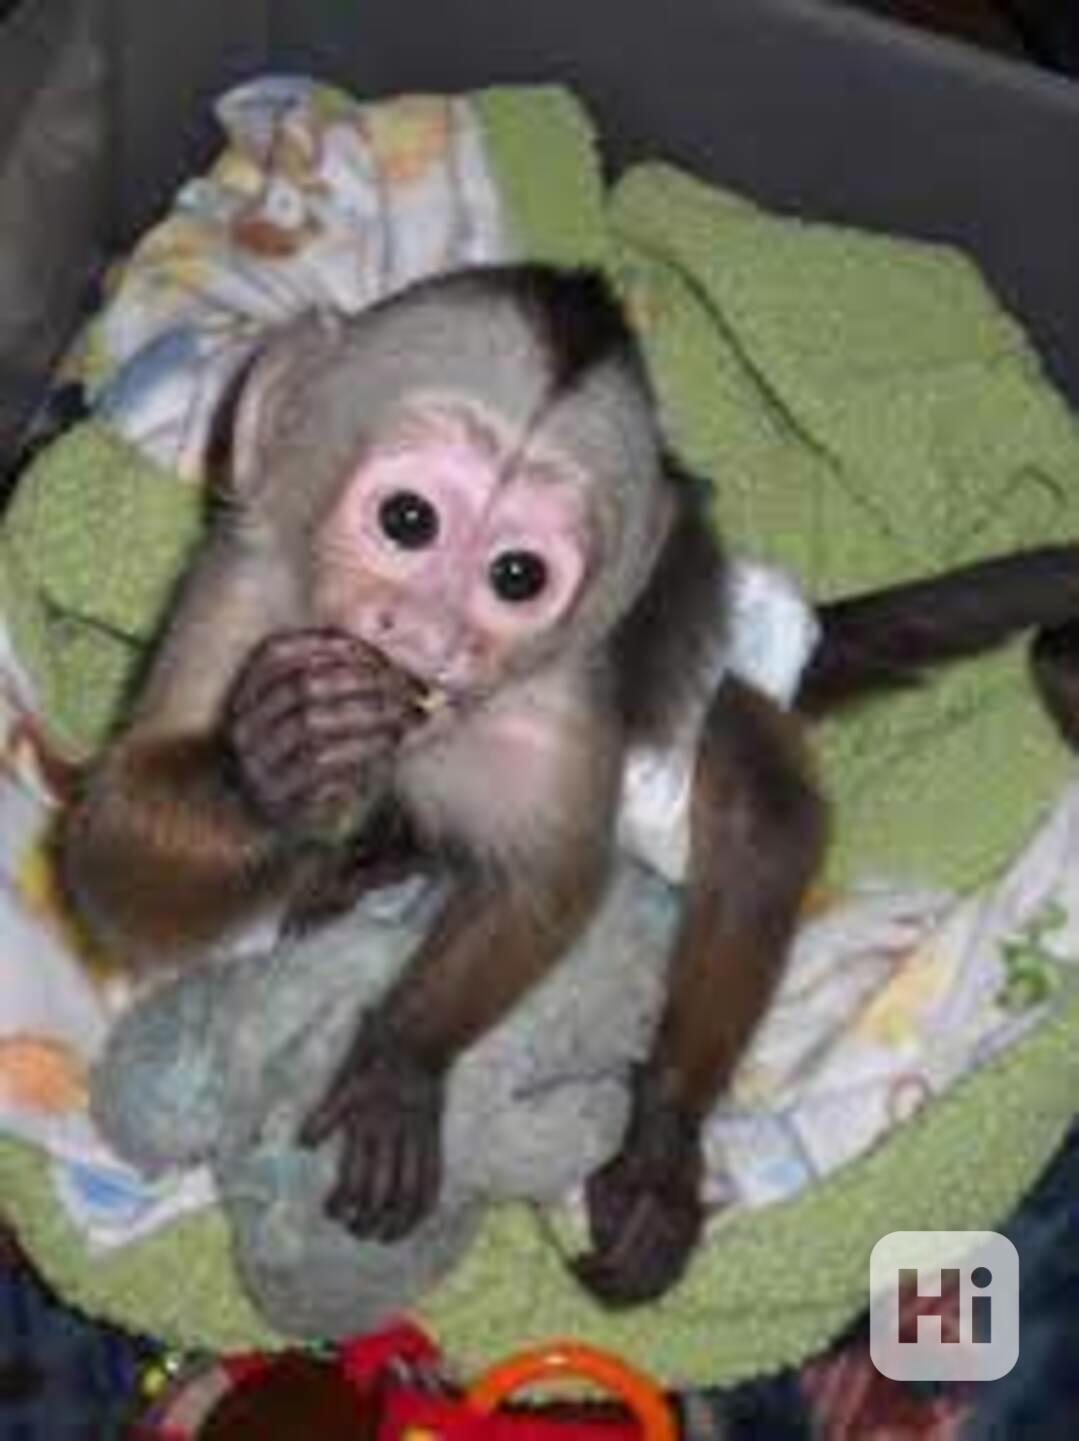 přátelské kapucínské opice k adopci - foto 1